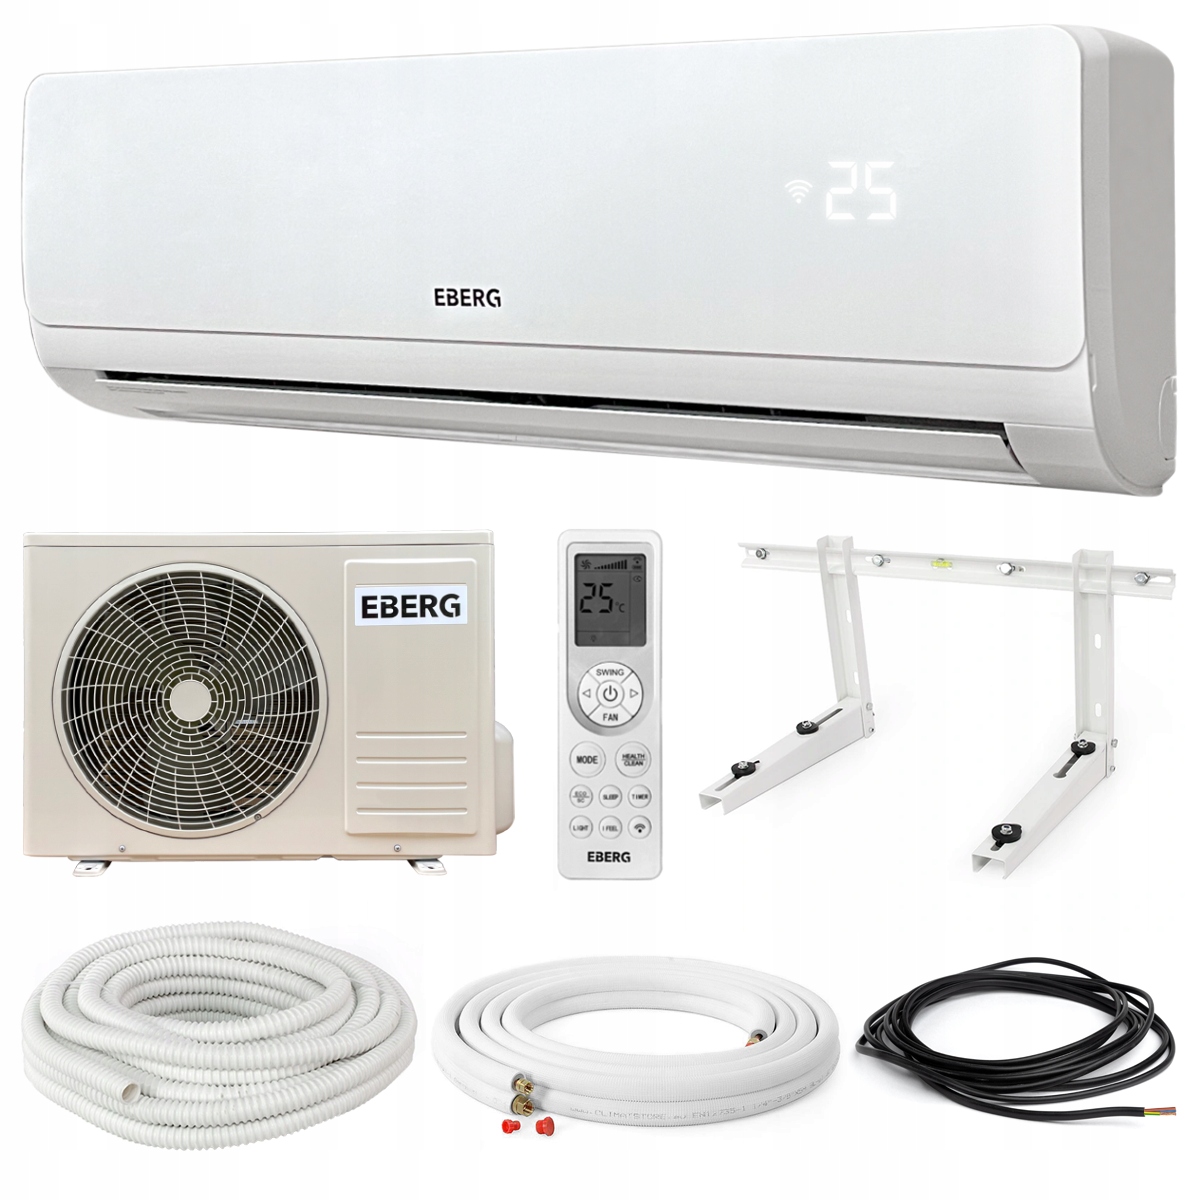 Klimatyzator ścienny zestaw EBERG AORI 3,5kW Wi-Fi (Klimatyzator split  Wi-Fi pompa ciepła) • Cena, Opinie 11247530452 • Allegro.pl